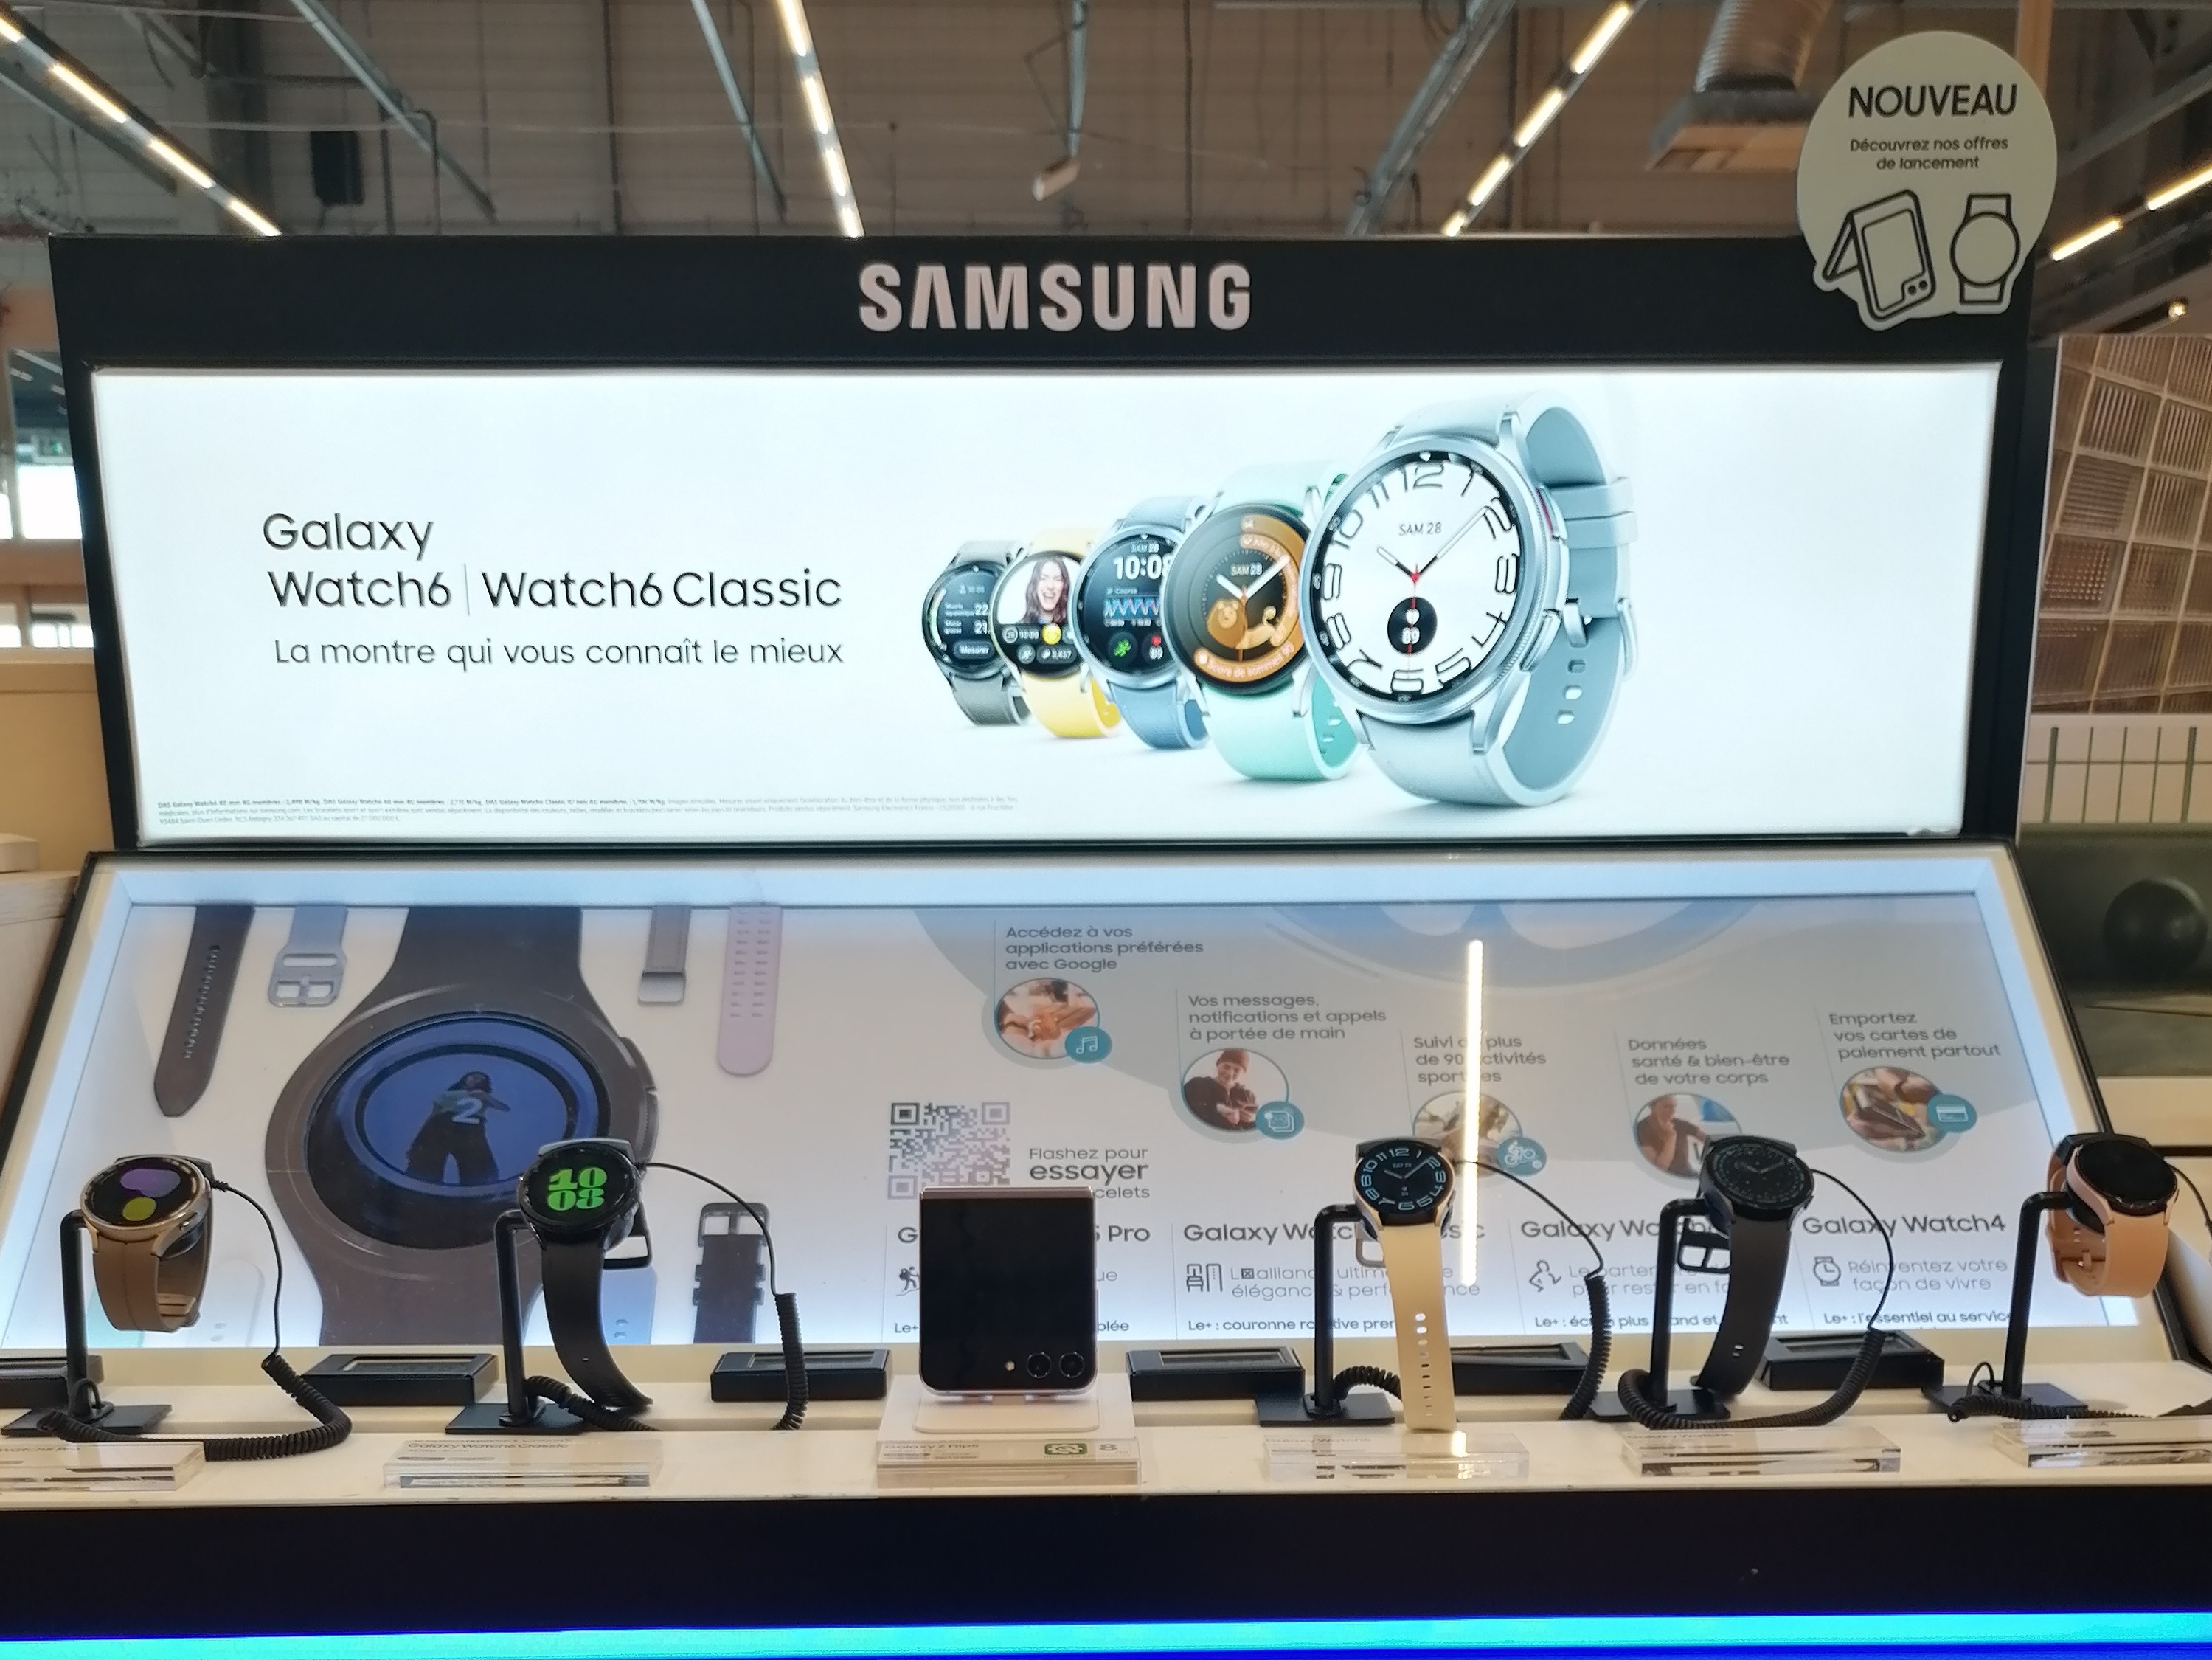 Samsung montre nouveauté boulanger troyes